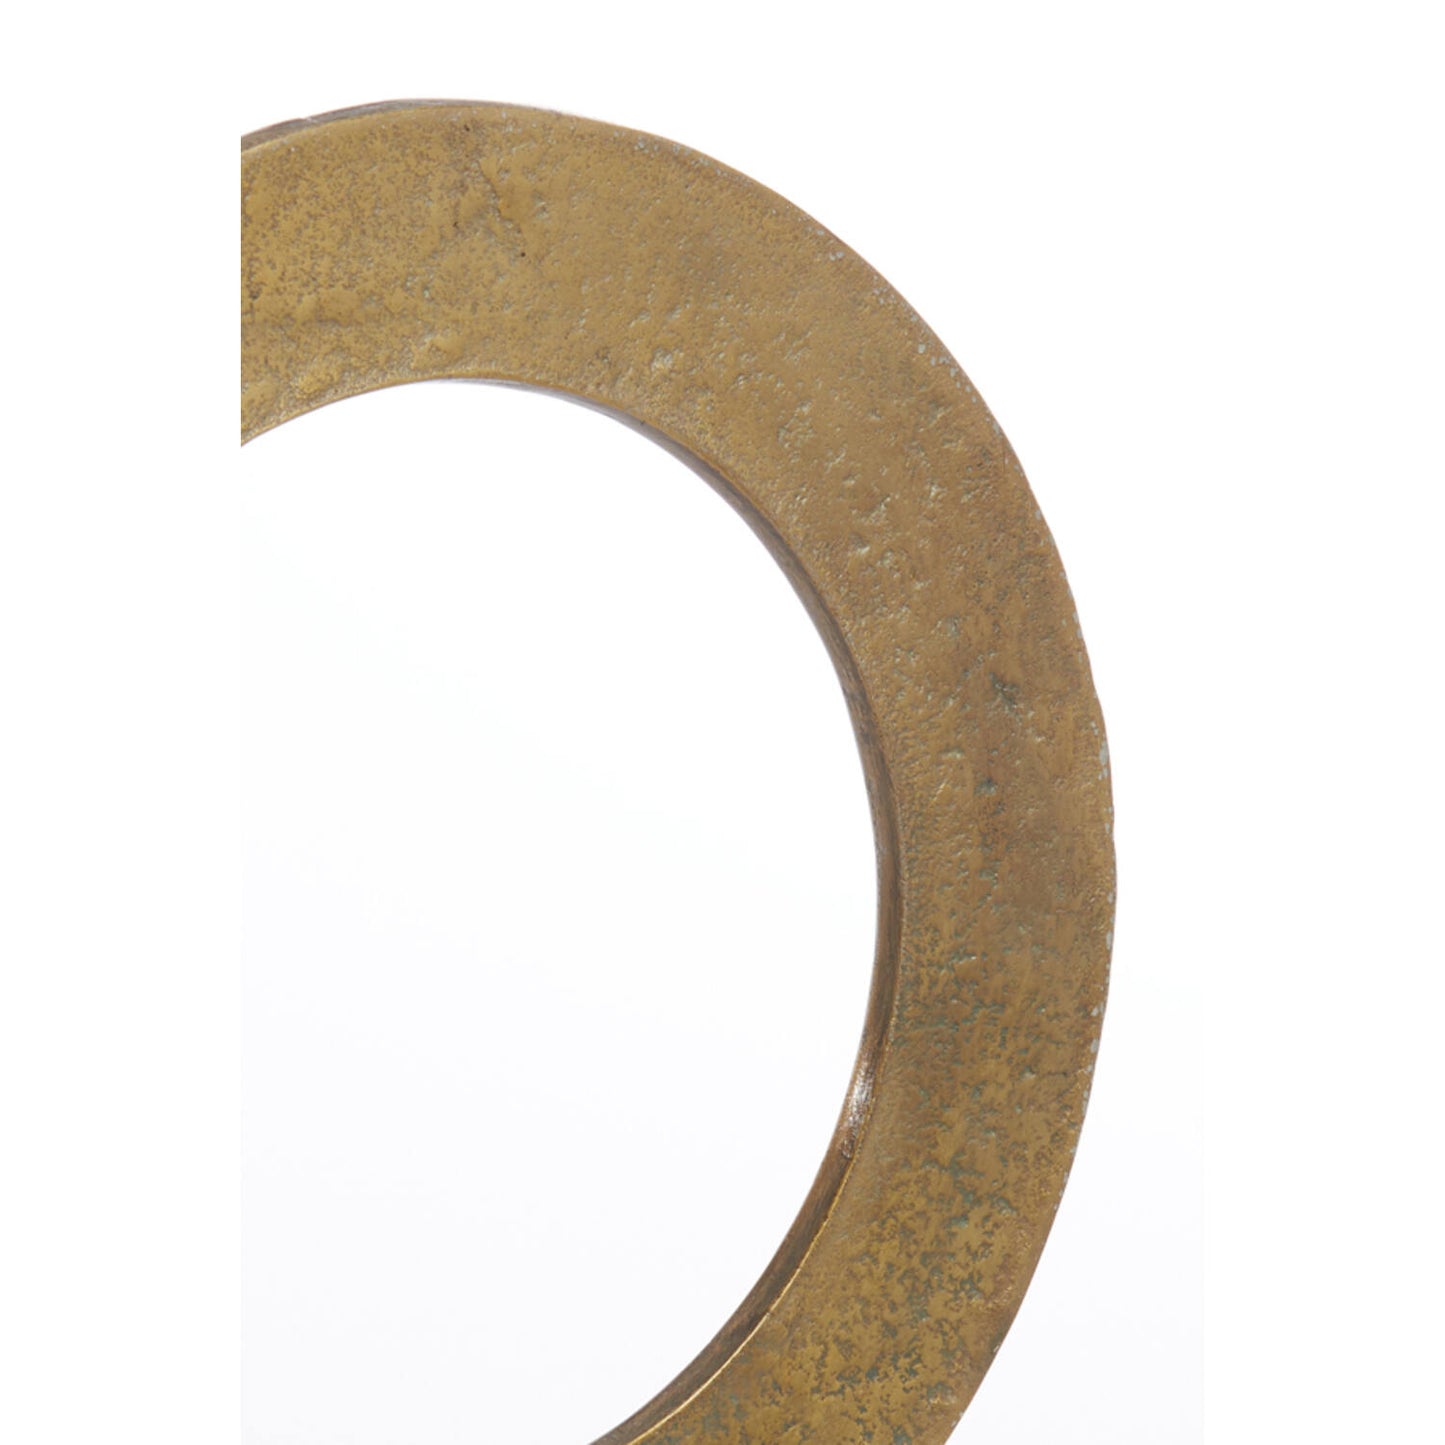 Ring-Ornament op voet goud/zwart WAIWO (L)